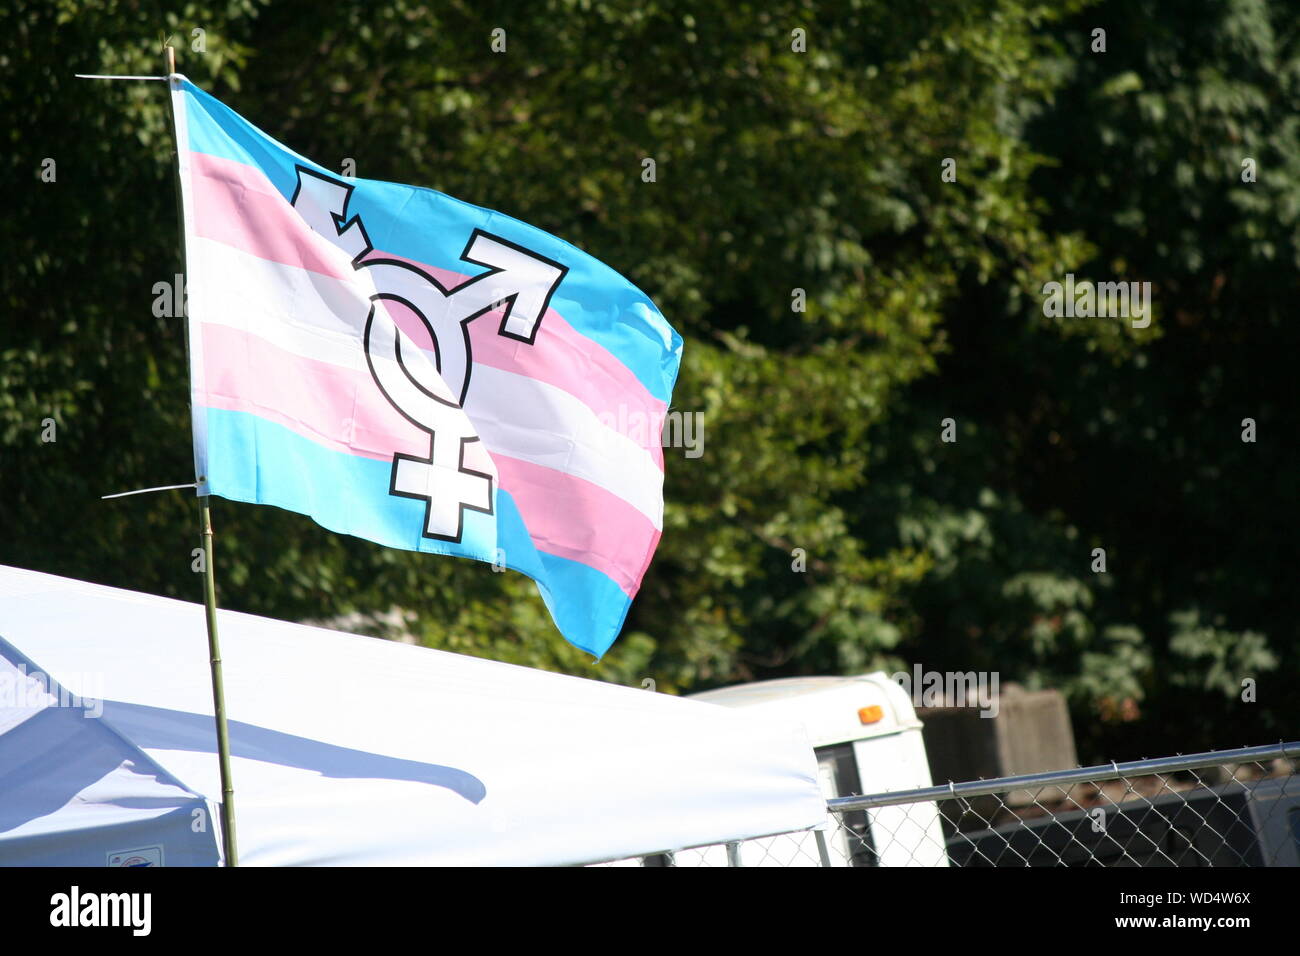 De brandir le drapeau des transgenres contre des arbres Banque D'Images